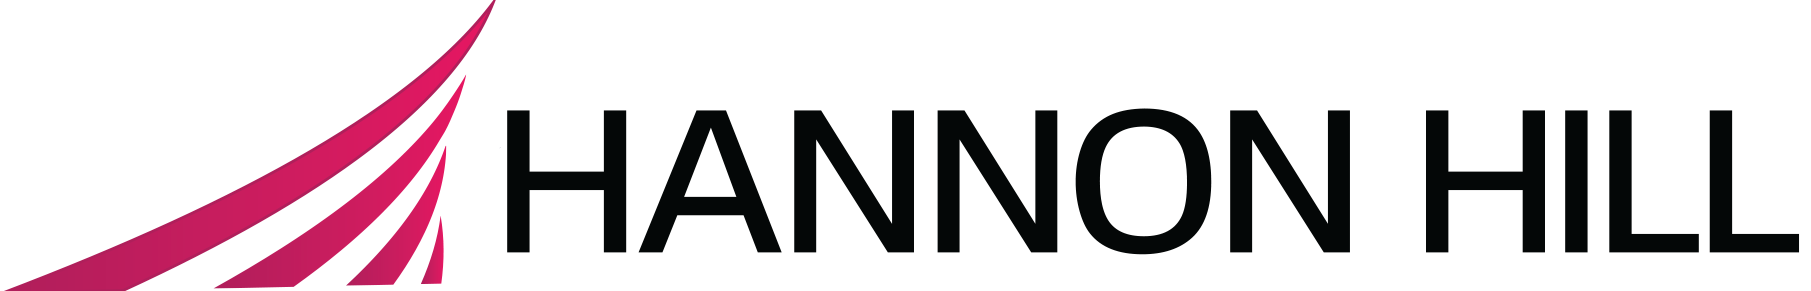 Hannon Hill color logo